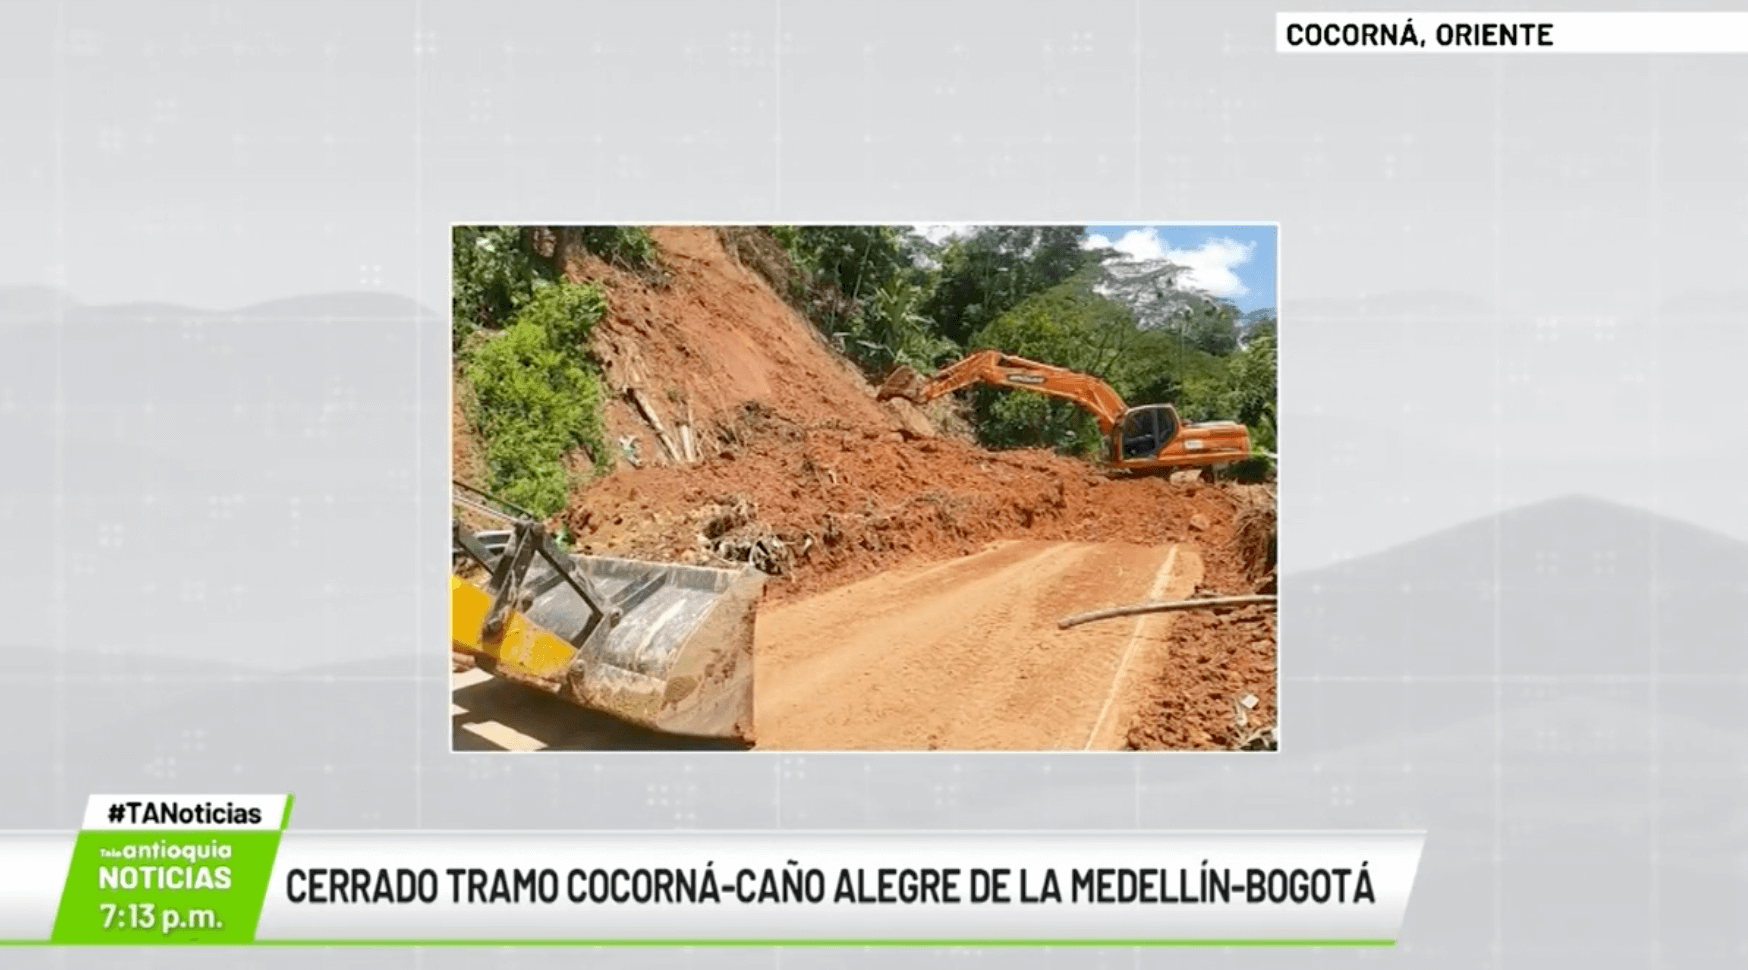 Cerrado tramo Cocorná-Caño Alegre de la Medellín-Bogotá